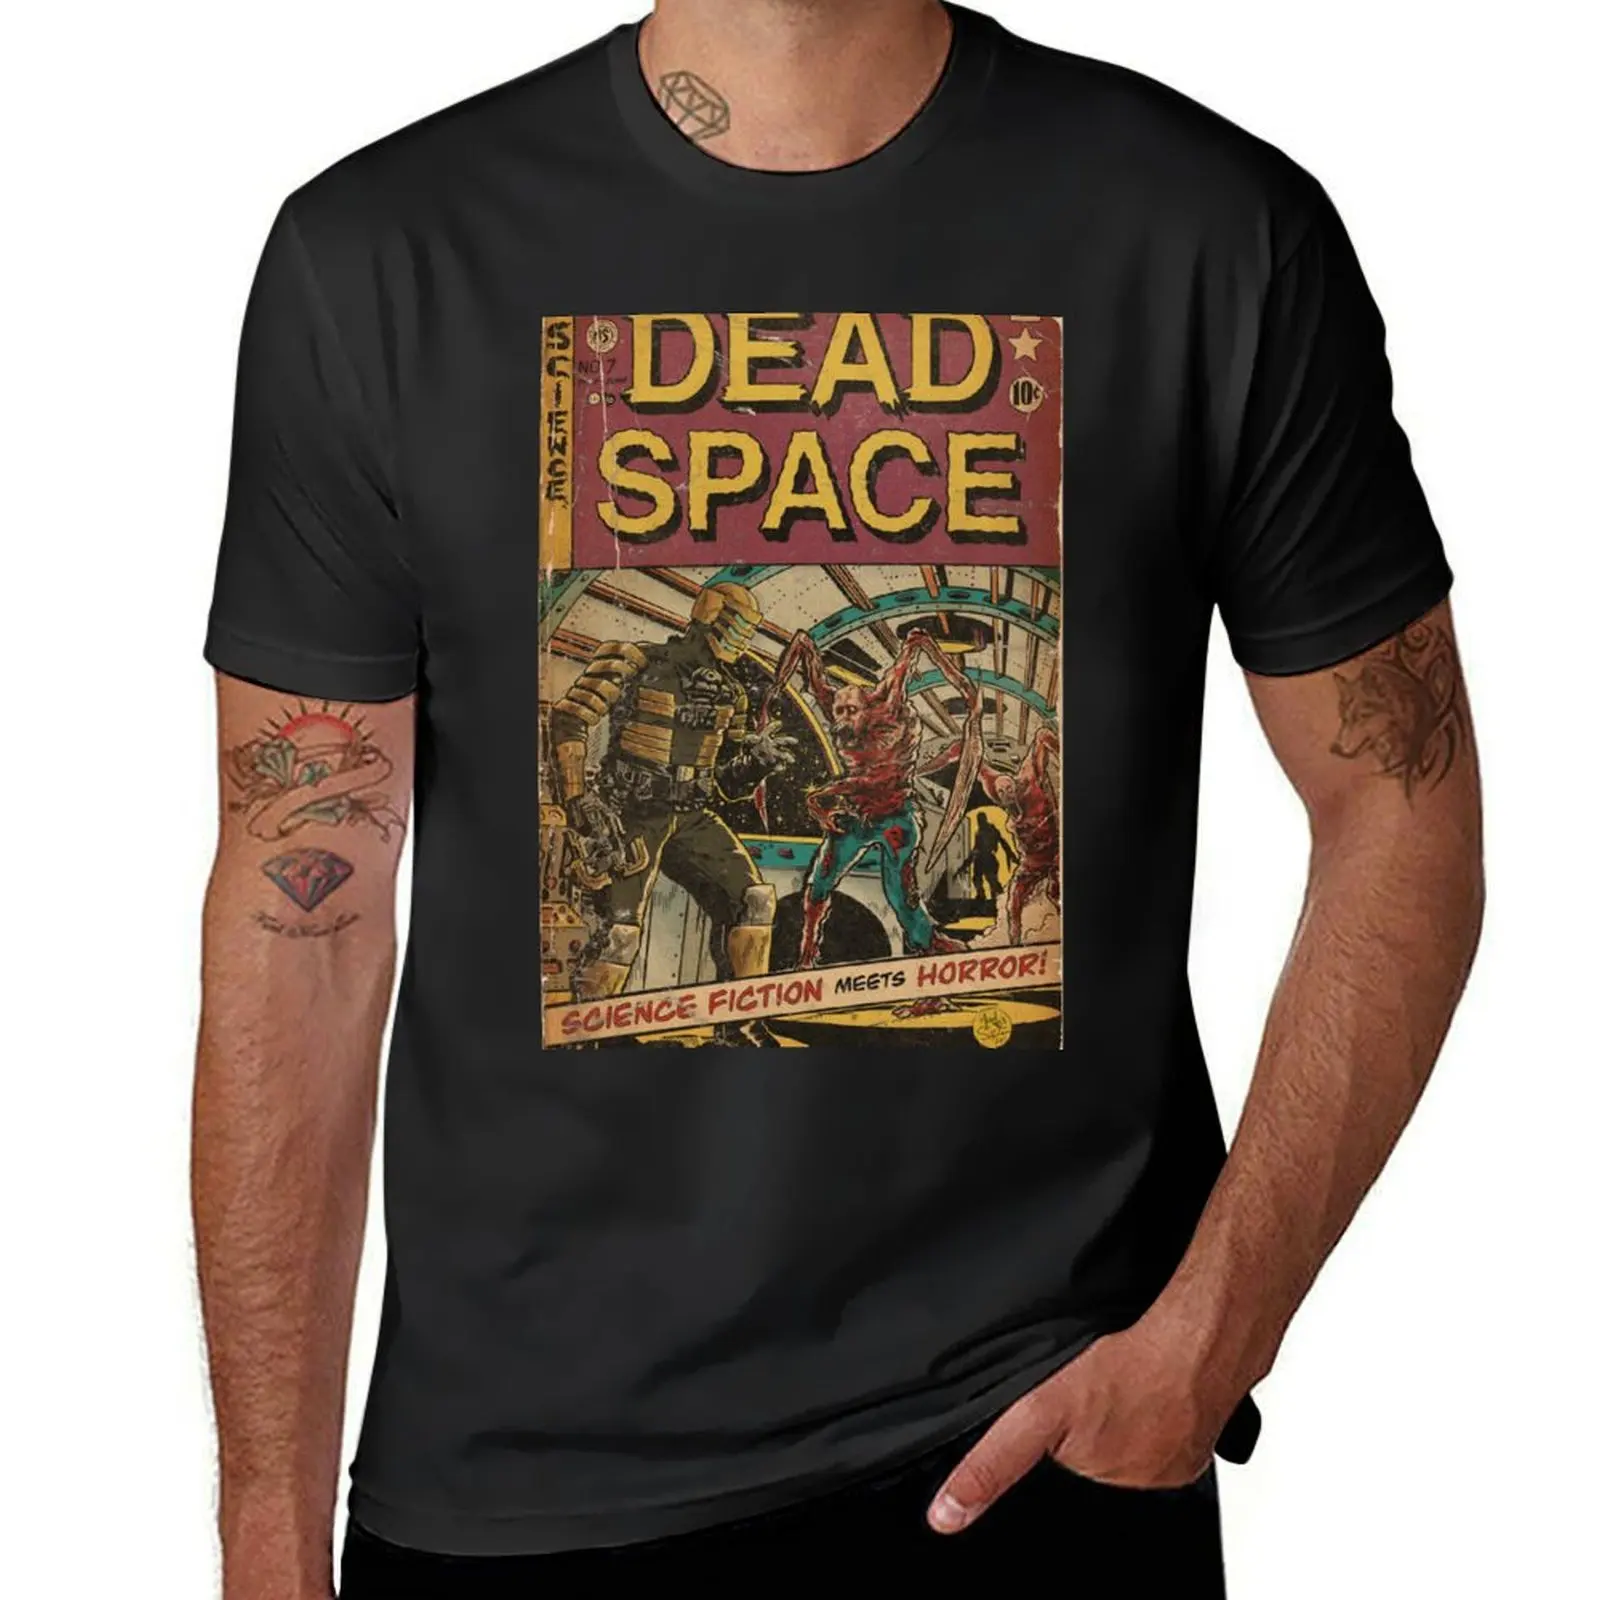 

Dead Space fan art comic cover T-Shirt customs design your own blacks sports fans cute clothes mens vintage t shirts